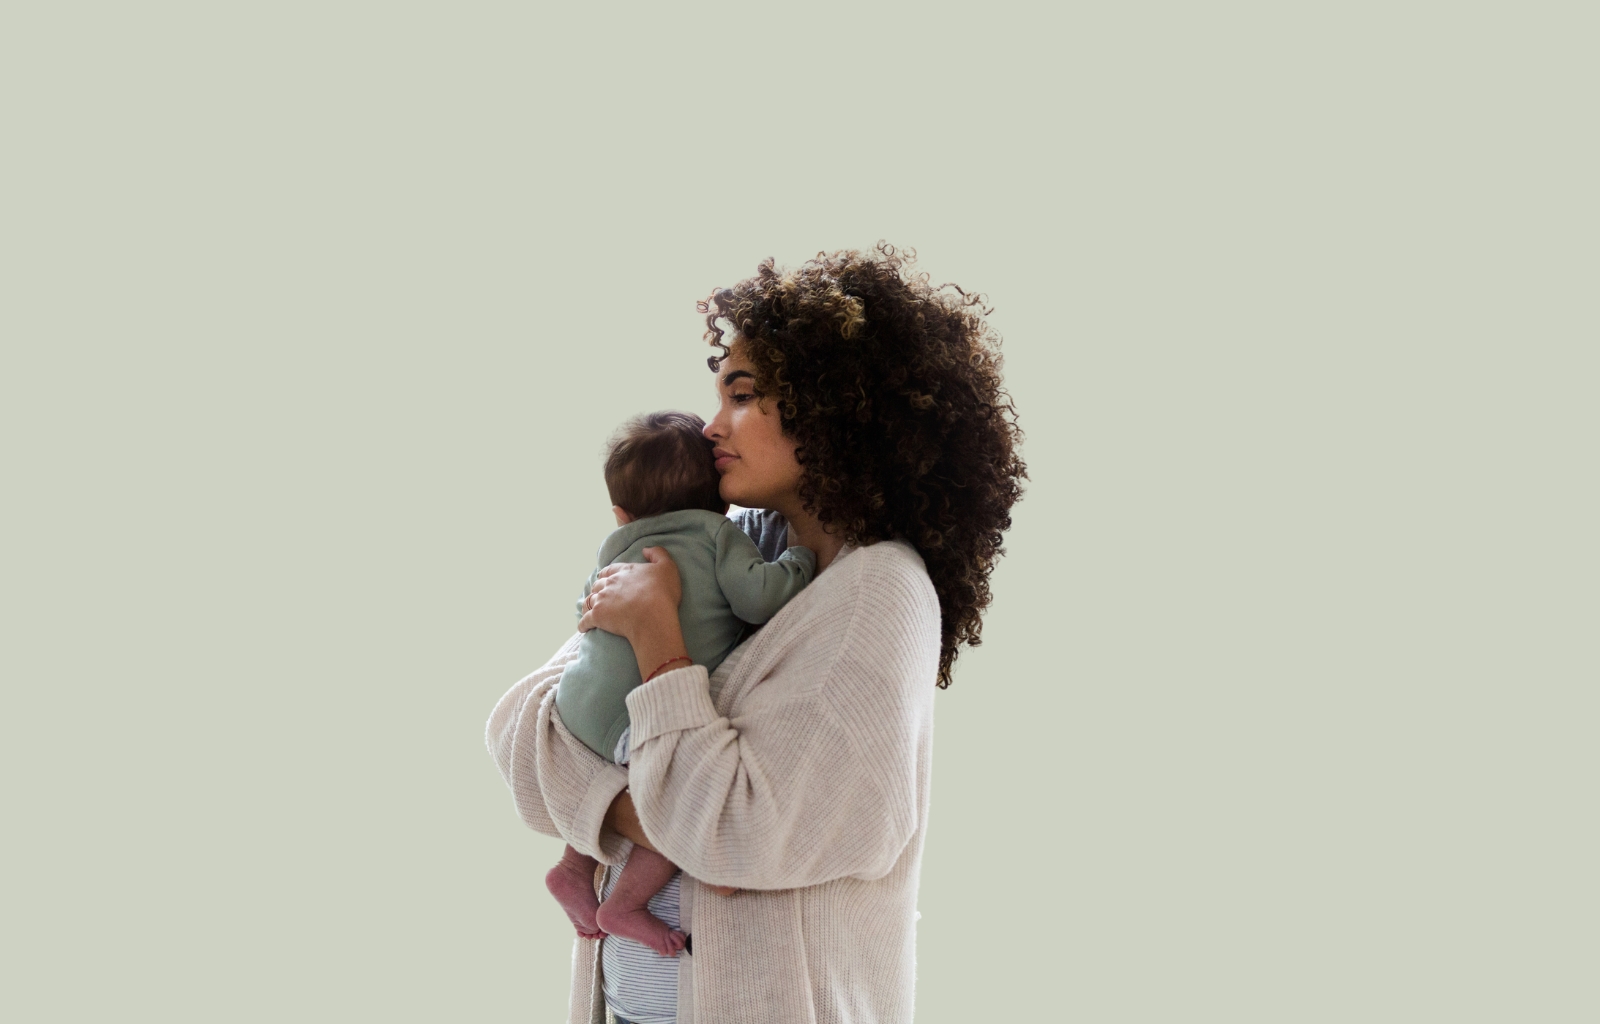 Os desafios da maternidade: 10 coisas que mudam para sempre